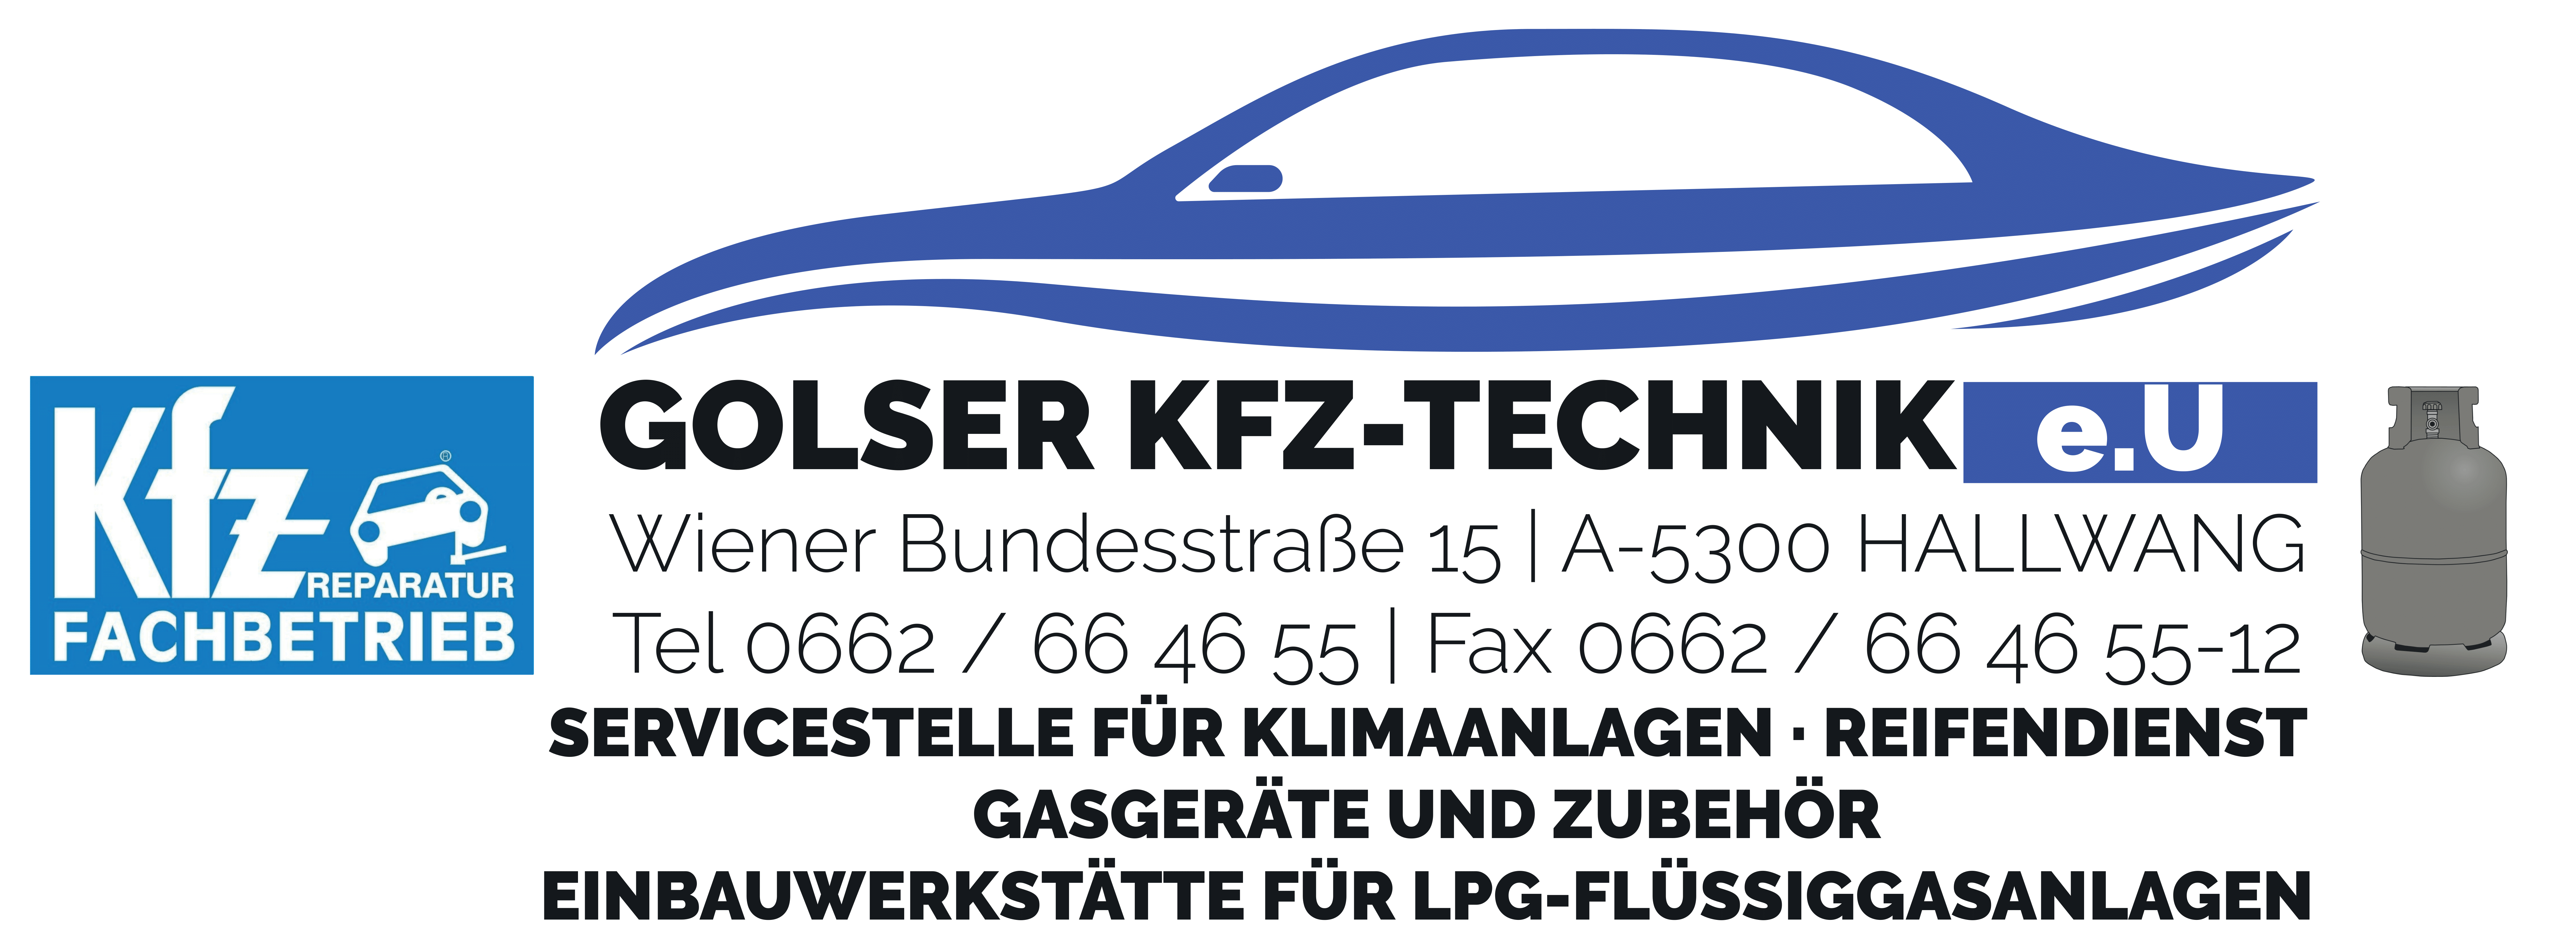 KFZ Golser